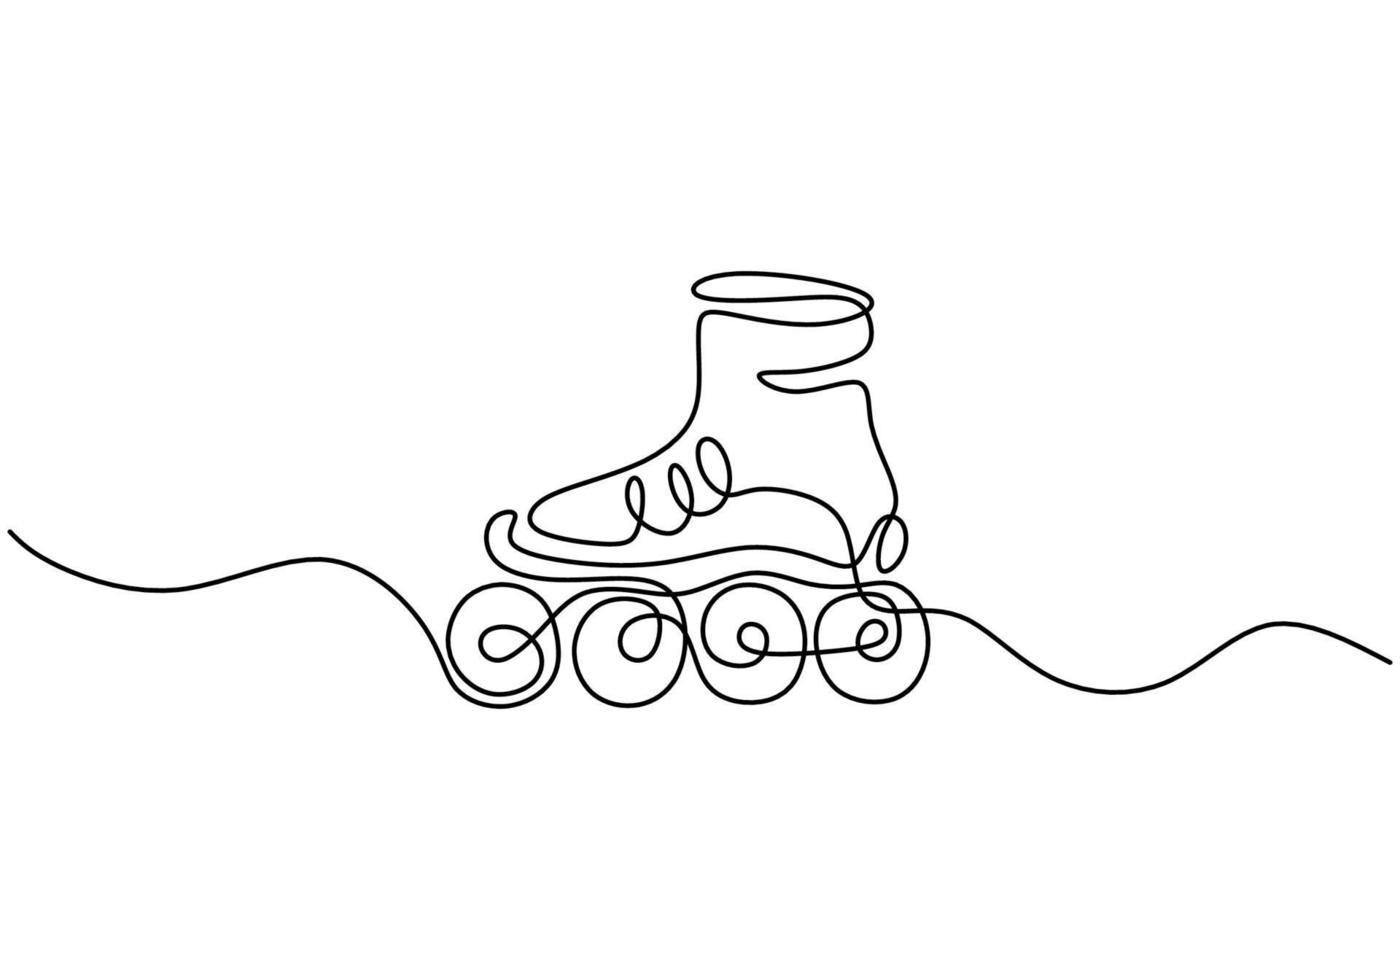 um desenho de linha contínua de um par de tênis retrô de plástico para patins de quatro rodas. conceito de esporte de aptidão saudável. esporte de equipamento de botas de patinação em linha clássico vintage ilustração vetorial vetor